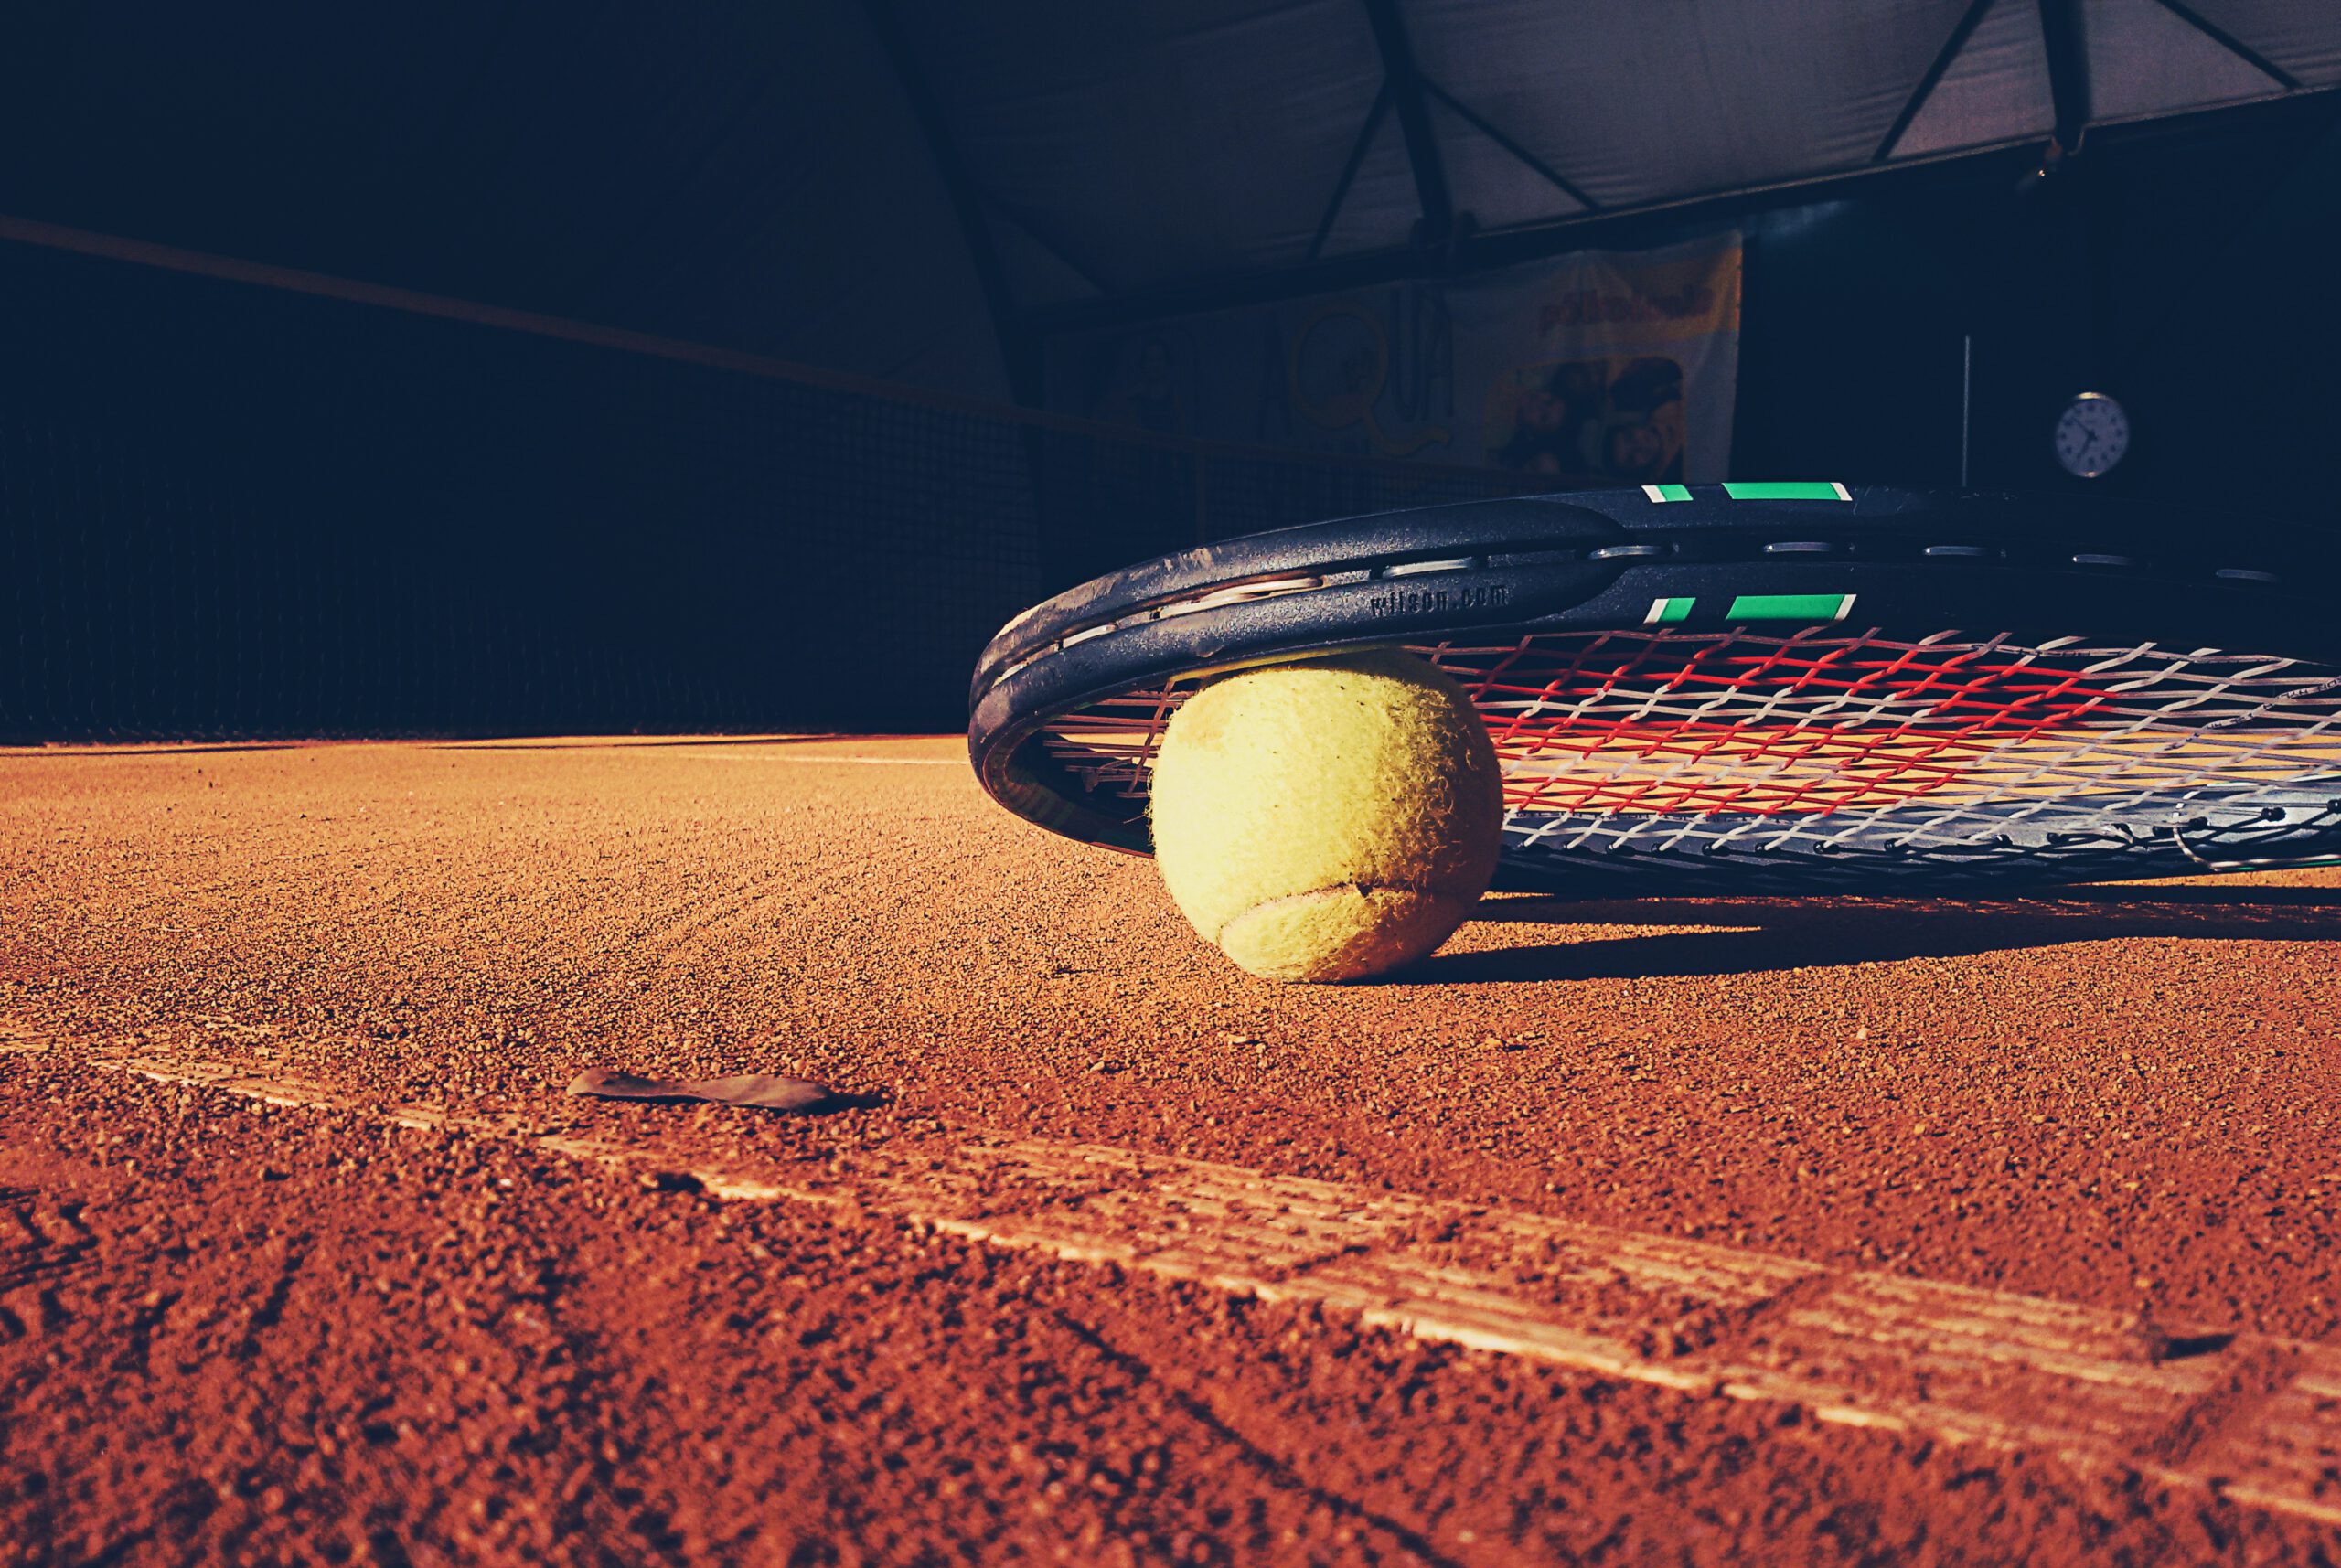 Pelota de tenis debajo de una raqueta en el suelo de una pista de tennis.